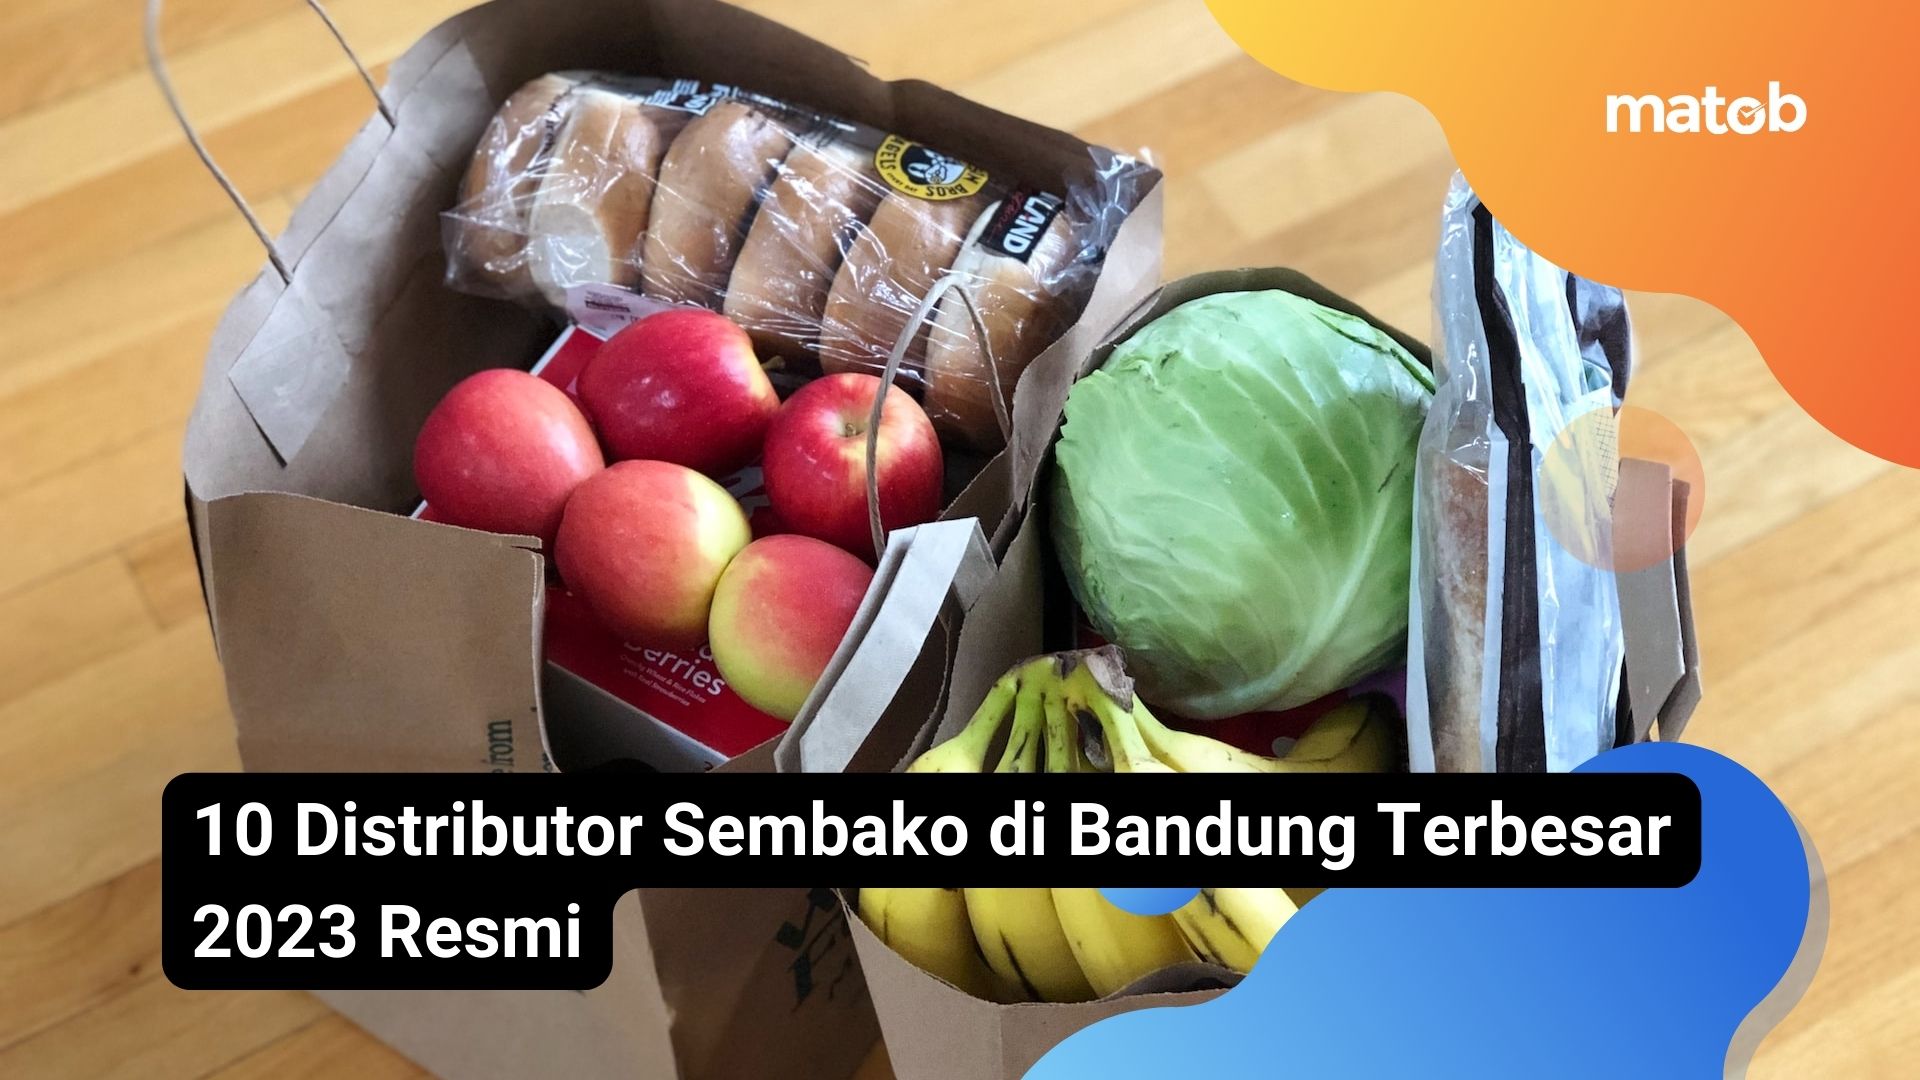 10 Distributor Sembako di Bandung Terbesar 2023 Resmi